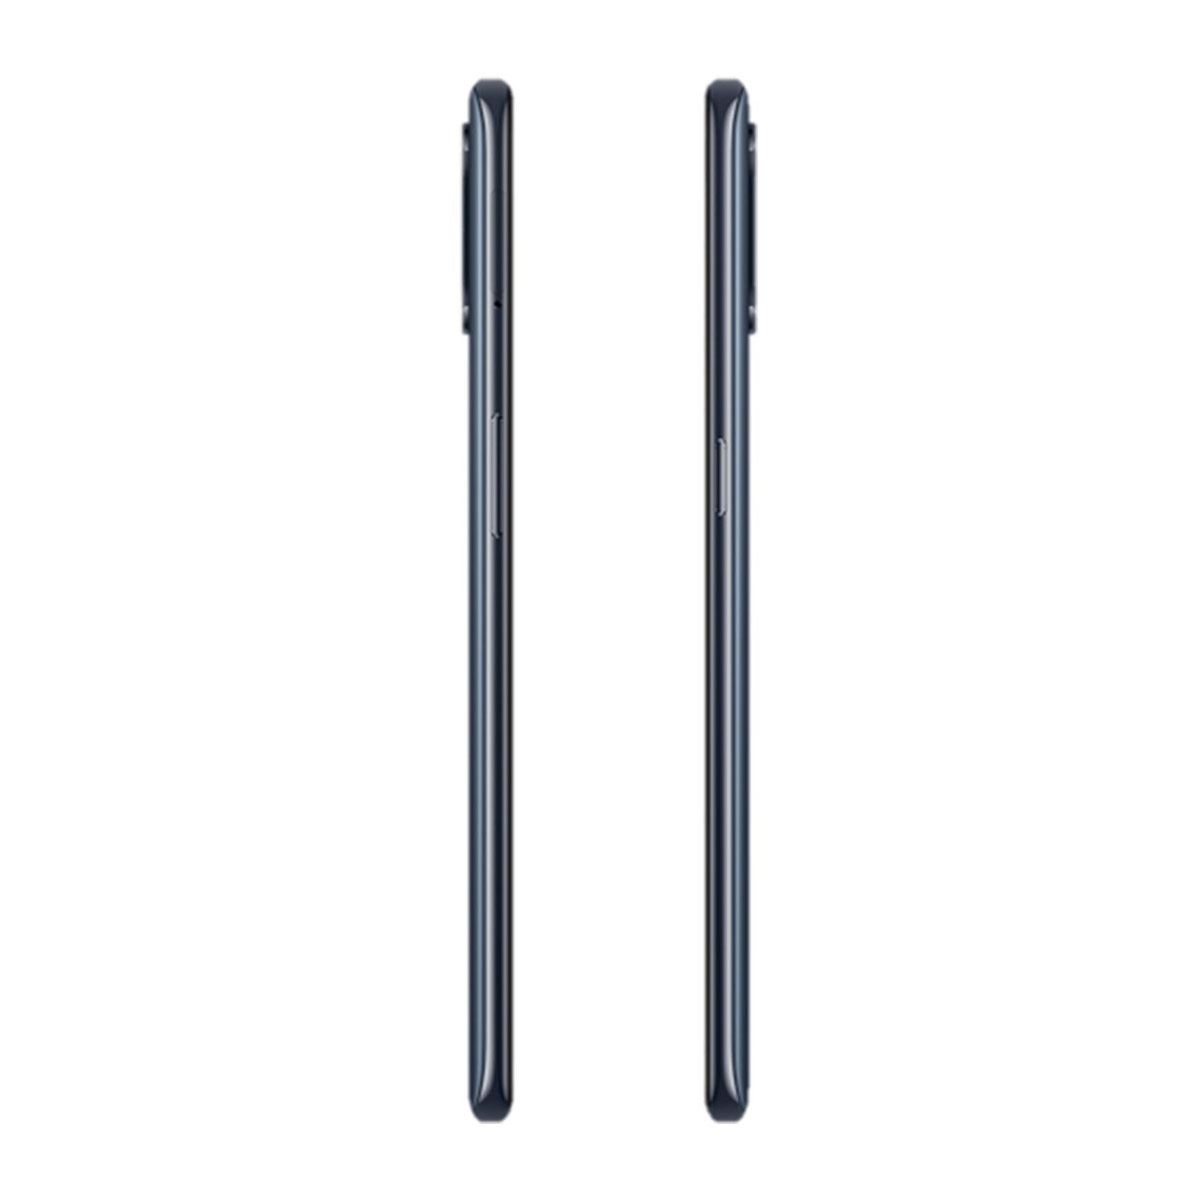 OnePlus Nord N100 64GB Gris Telcel R6